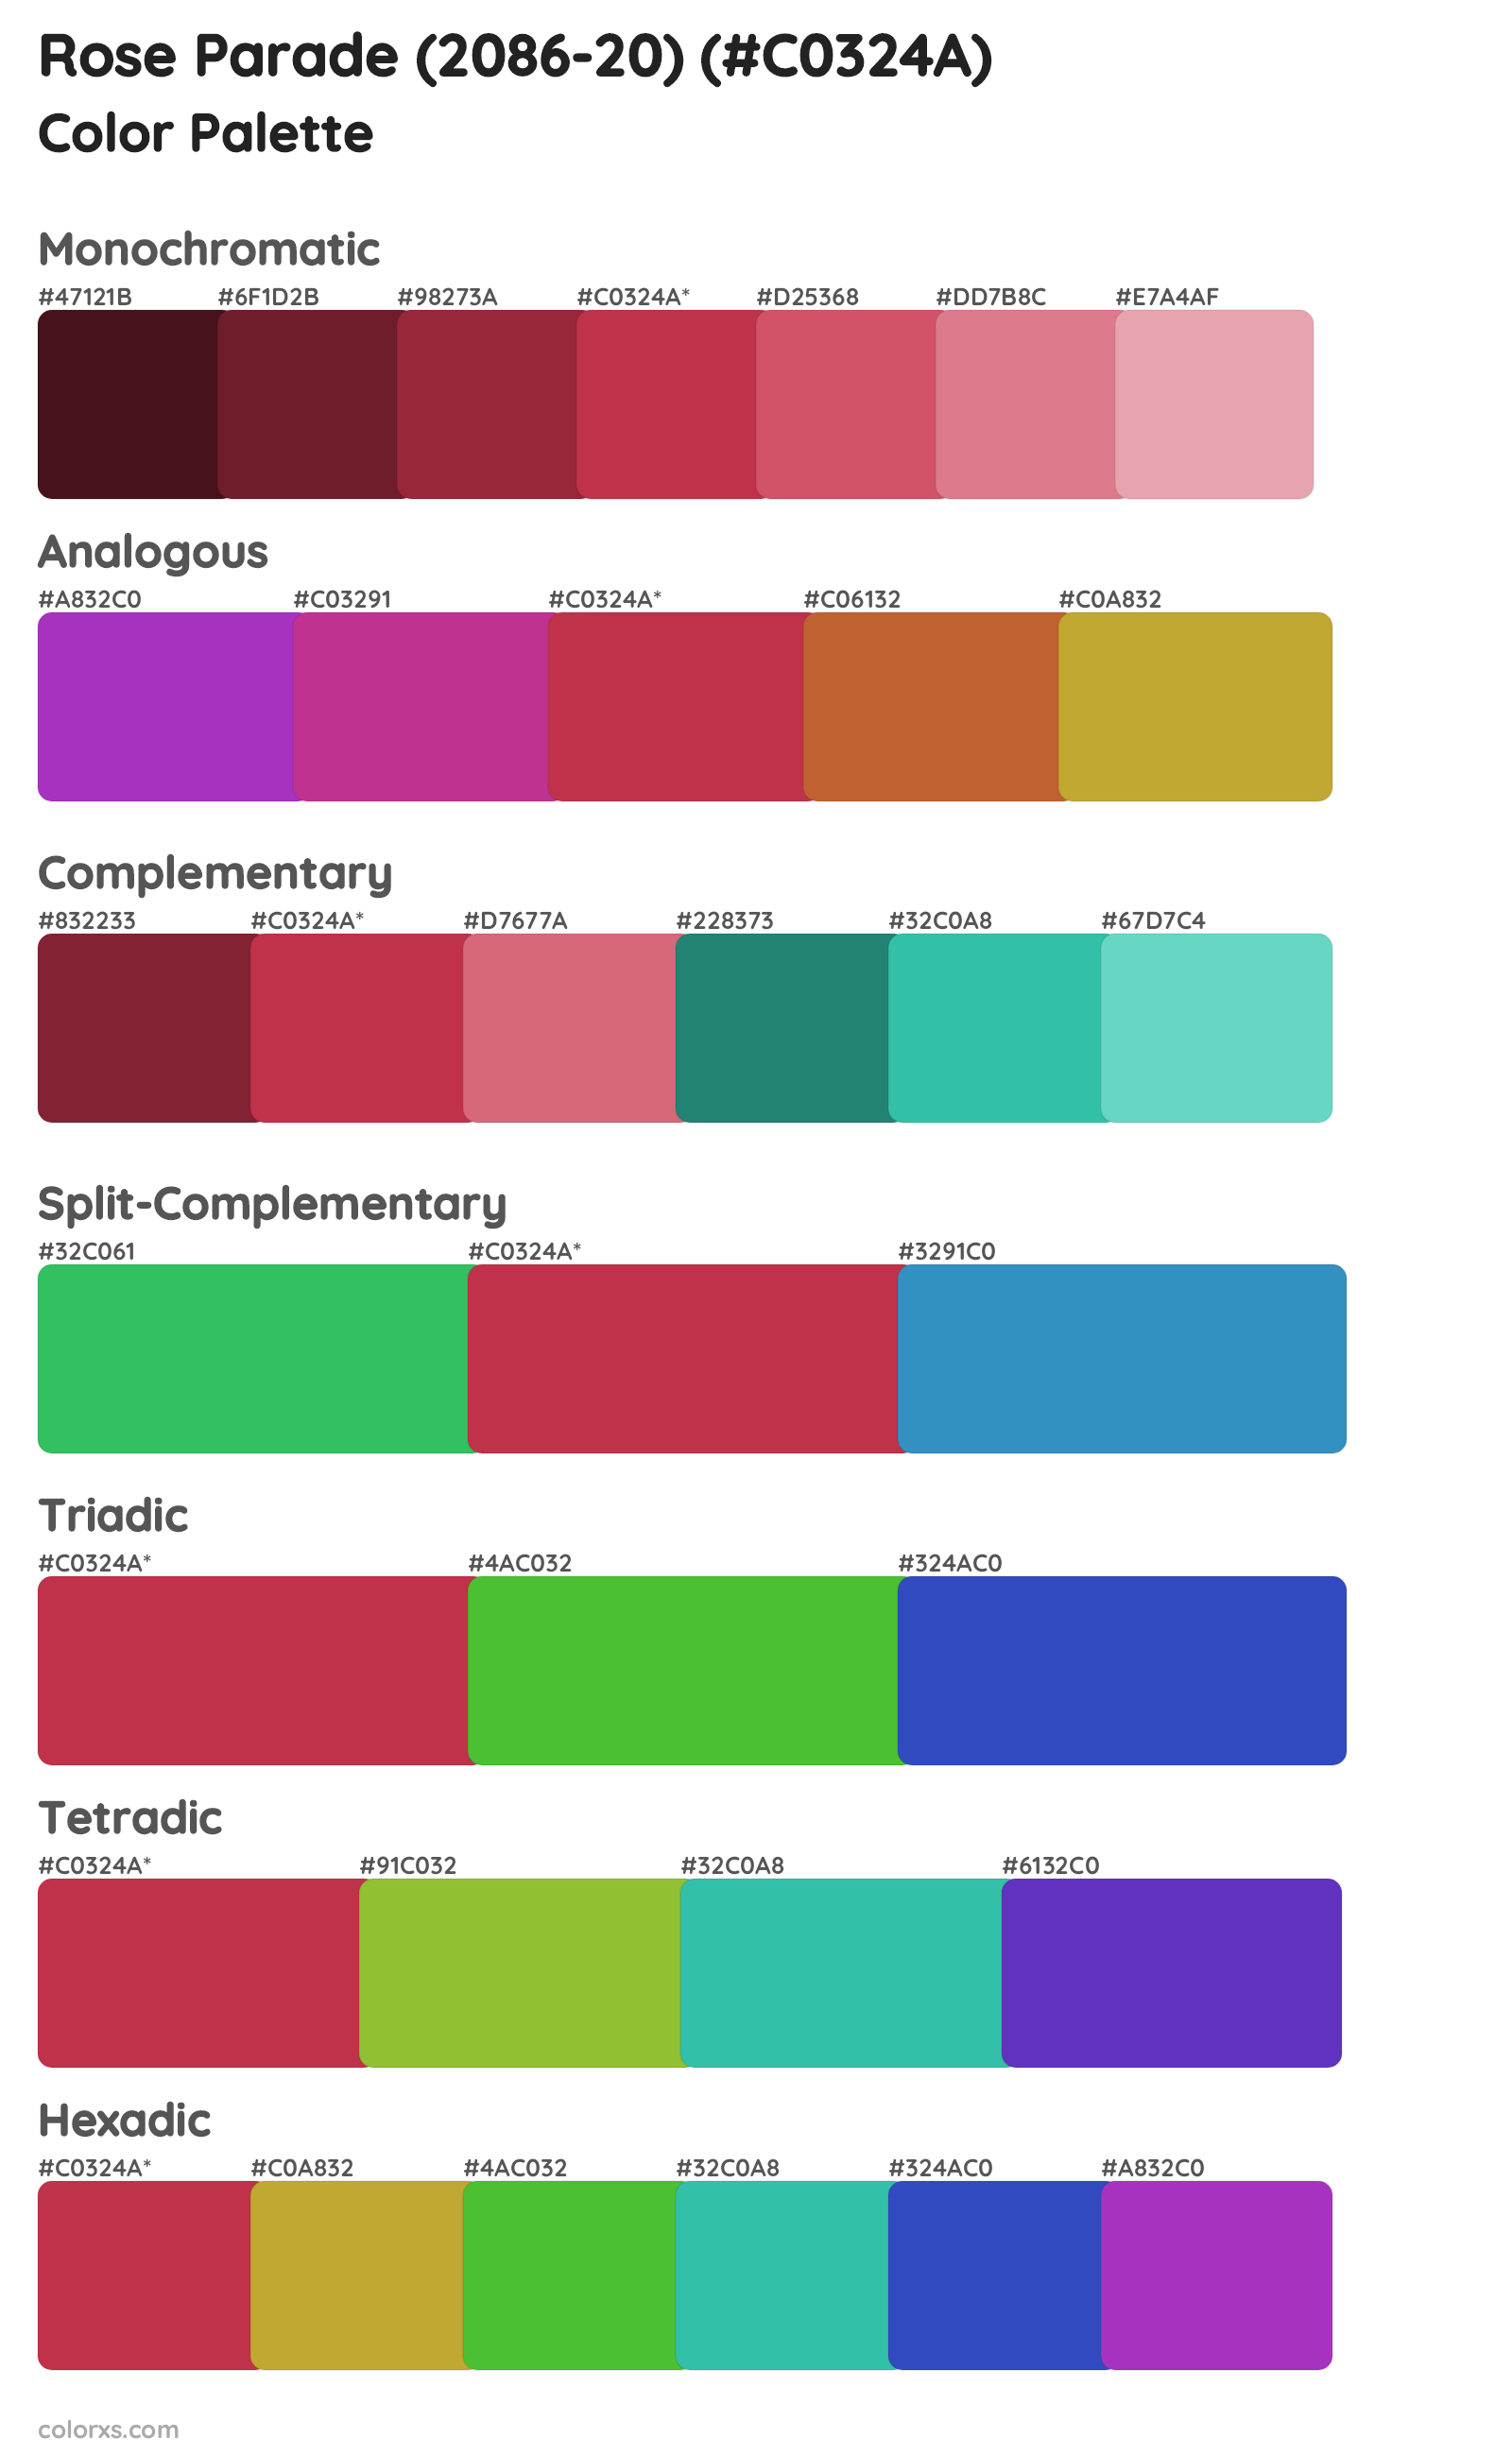 Rose Parade (2086-20) Color Scheme Palettes